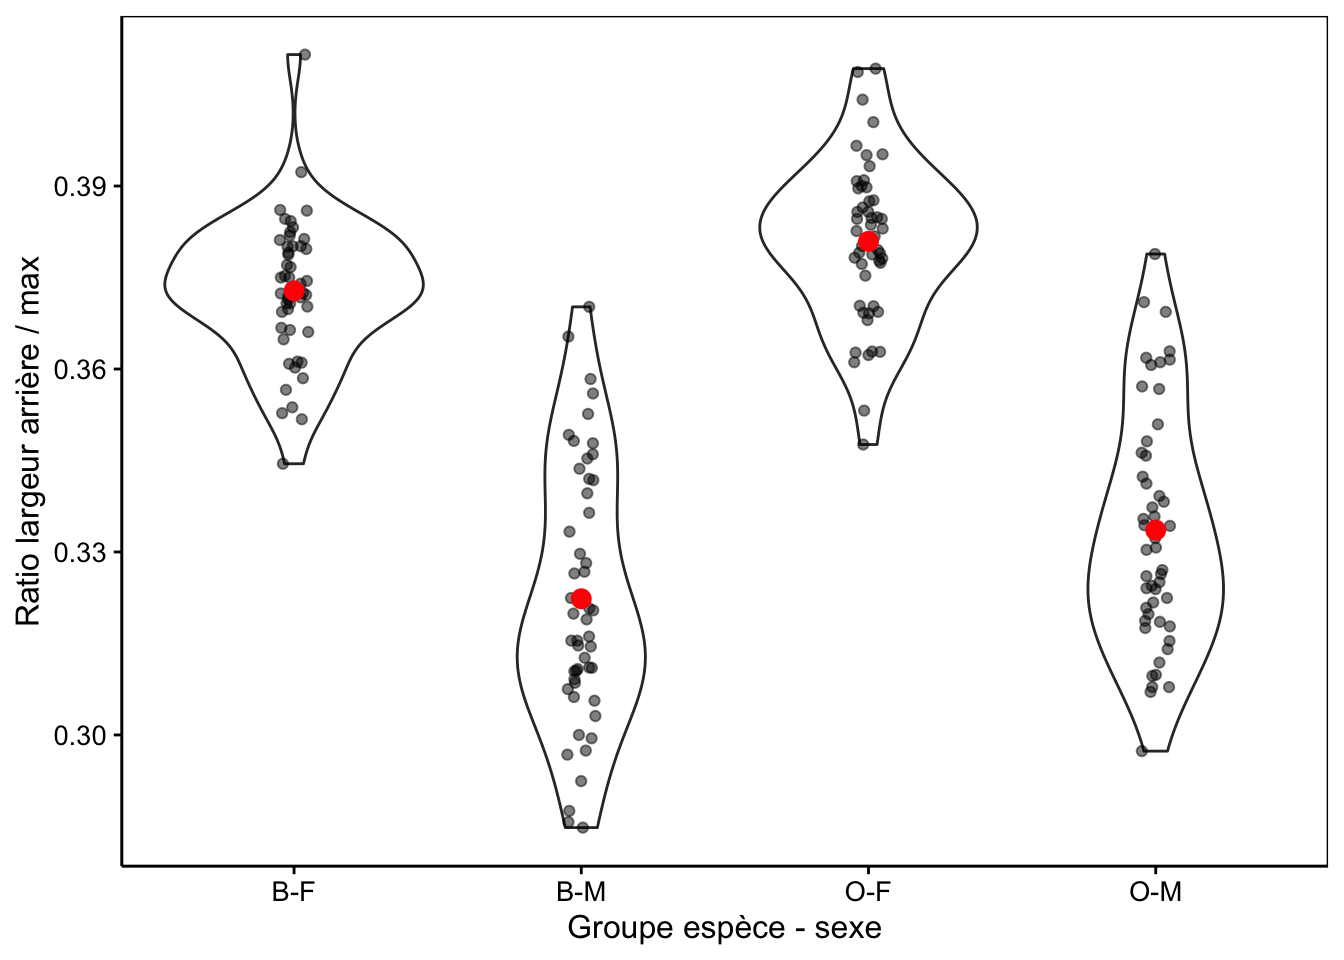 Ratio largeur arrière/largeur max en fonction du groupe de crabes *L. variegatus*. Graphique adéquat pour comparer les moyennes et distributions dans le cas d'un nombre important de réplicas (moyennes en rouge + observations individuelles en noir semi-transparent superposées à des graphiques en violon).